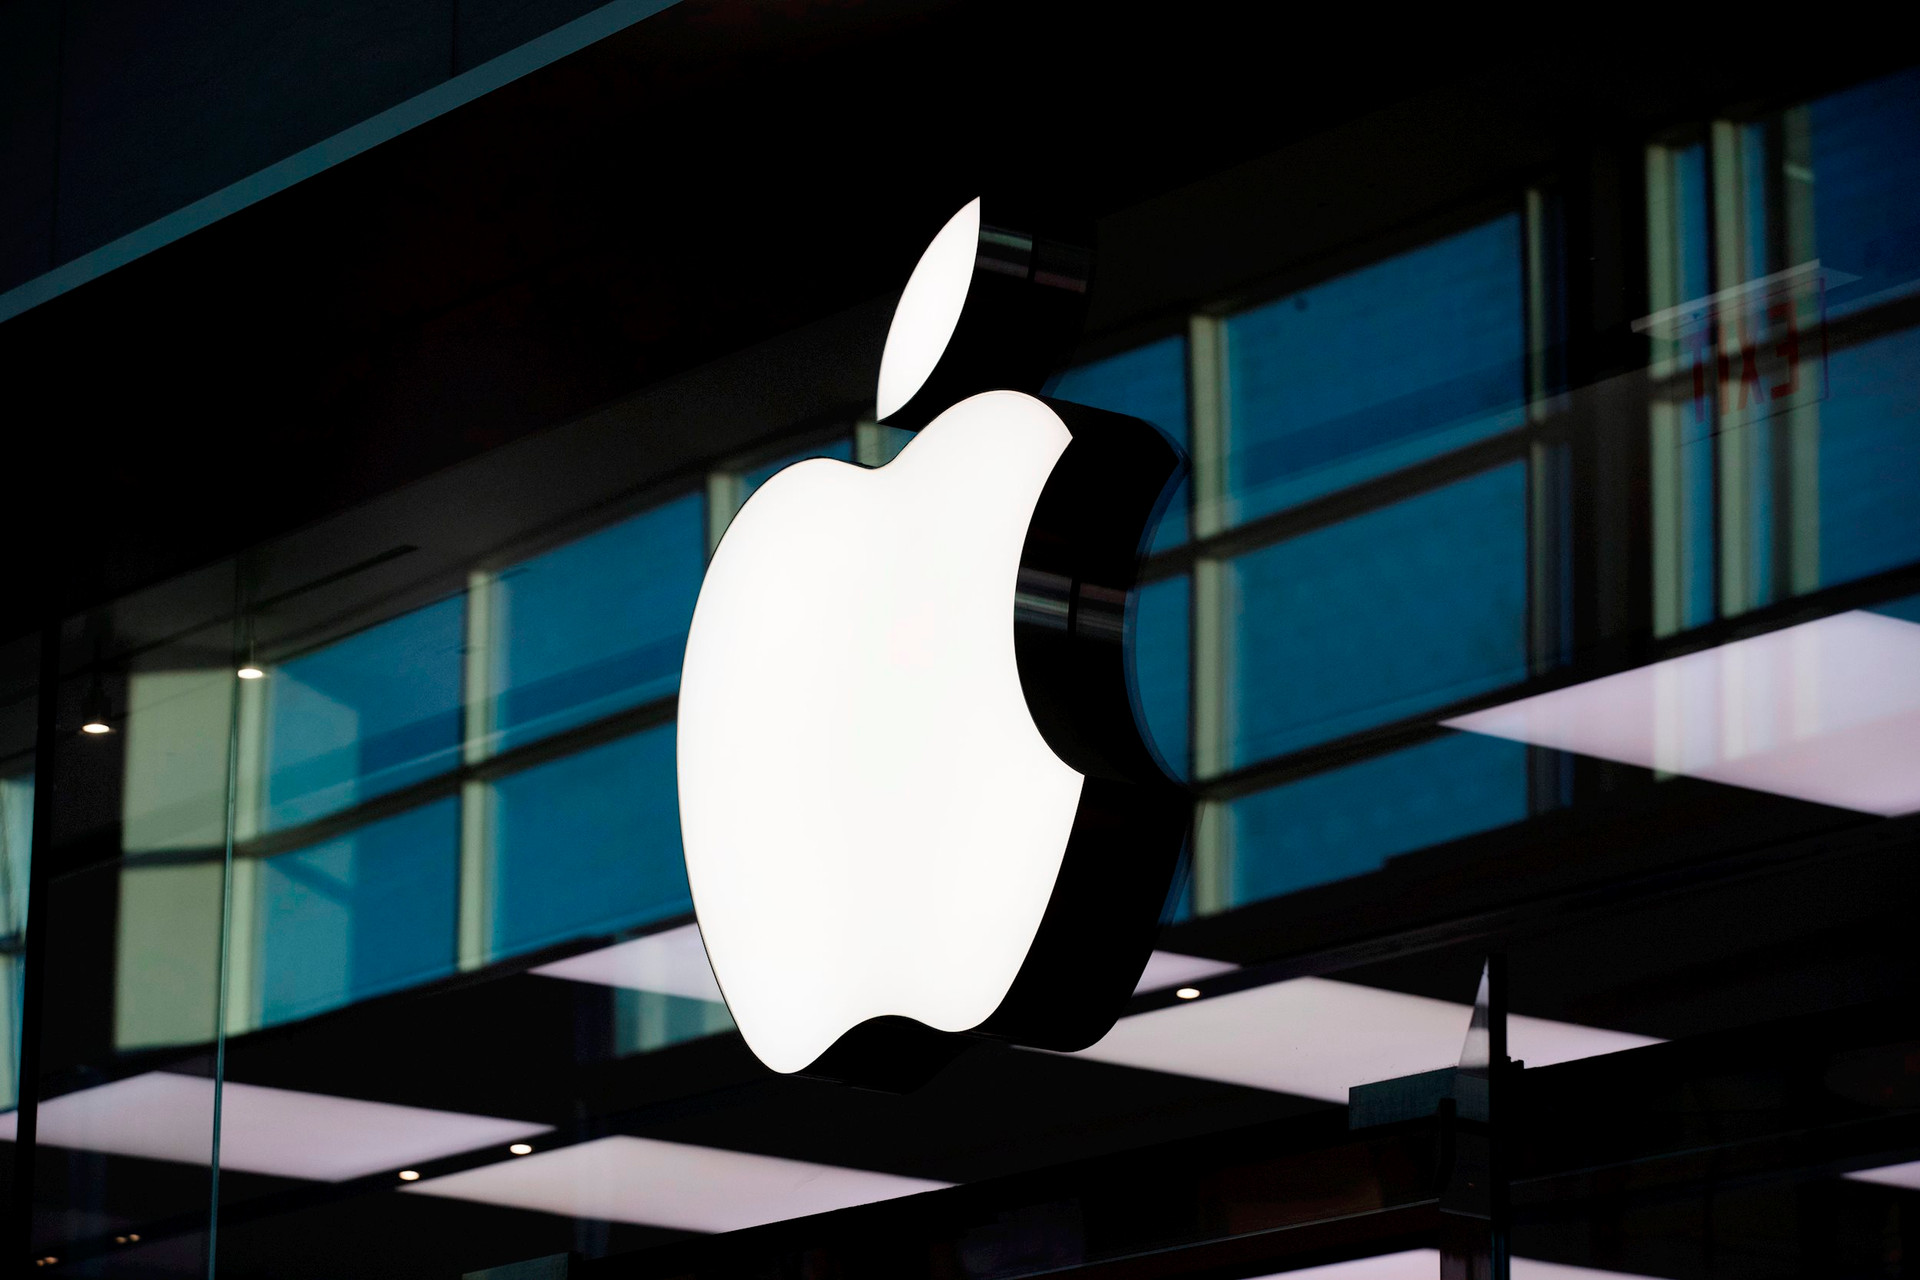 Nhà đầu tư hoảng loạn bán tháo, vốn hóa Apple sắp bốc hơi 60 tỷ USD chỉ vì 1 thông báo - Ảnh 1.